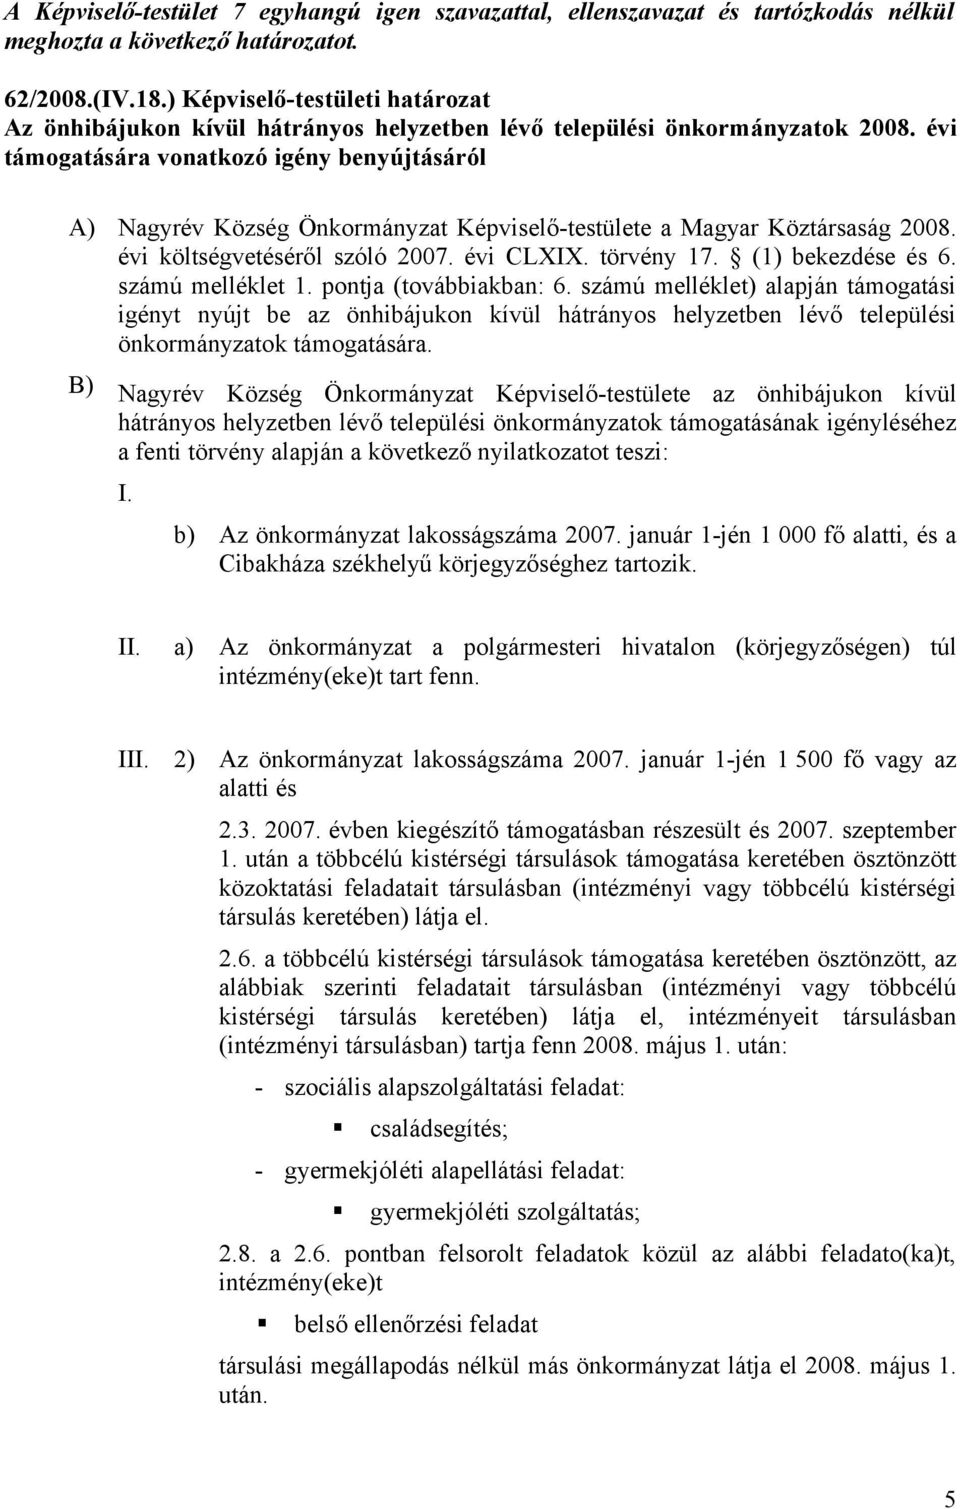 évi támogatására vonatkozó igény benyújtásáról A) Nagyrév Község Önkormányzat Képviselő-testülete a Magyar Köztársaság 2008. évi költségvetéséről szóló 2007. évi CLXIX. törvény 17. (1) bekezdése és 6.